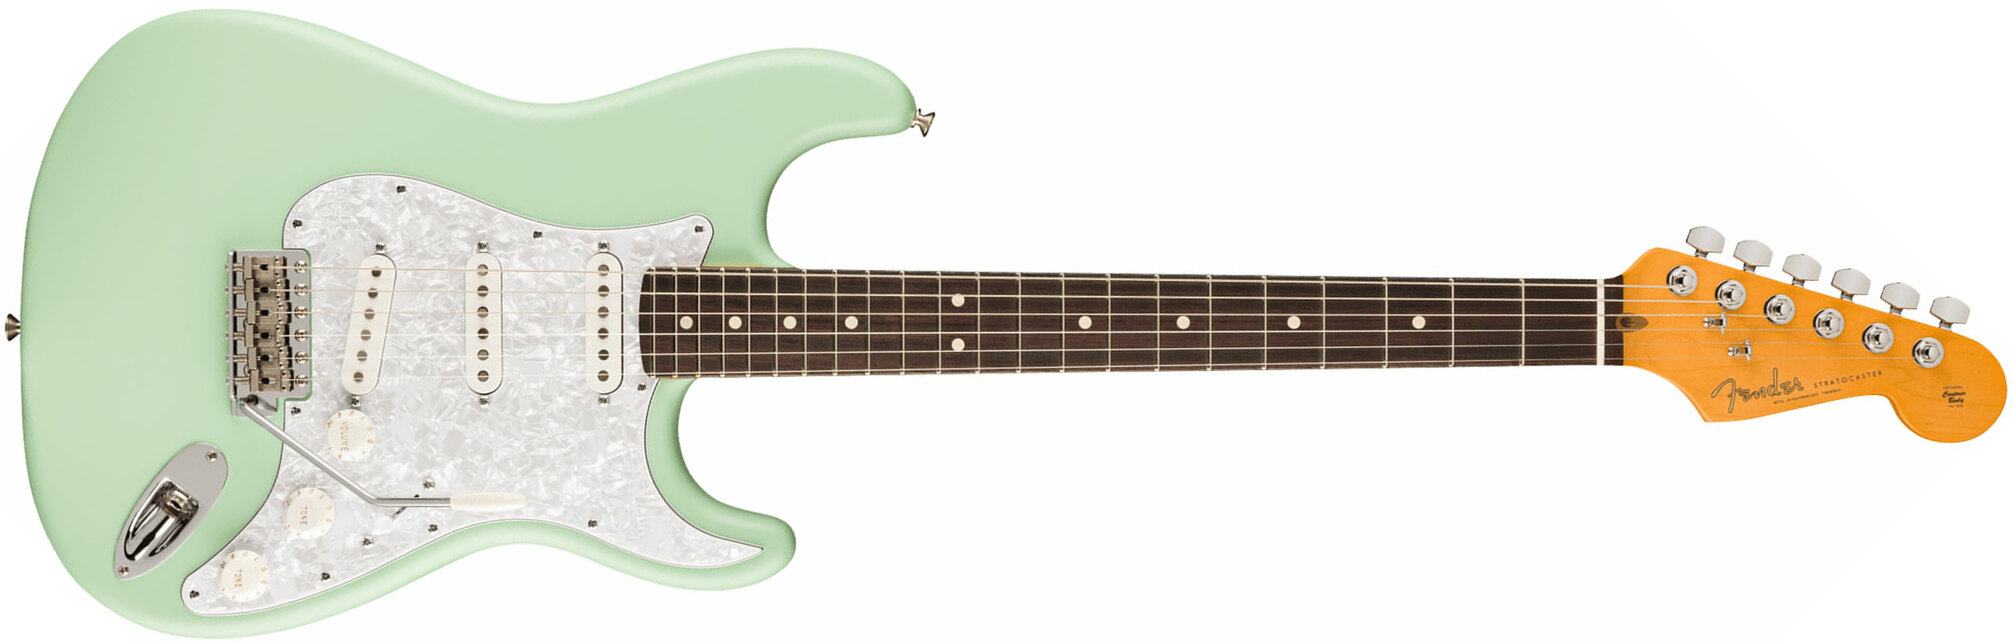 Fender Cory Wong Strat Ltd Signature Usa Stss Trem Rw - Surf Green - Guitare Électrique Forme Str - Main picture